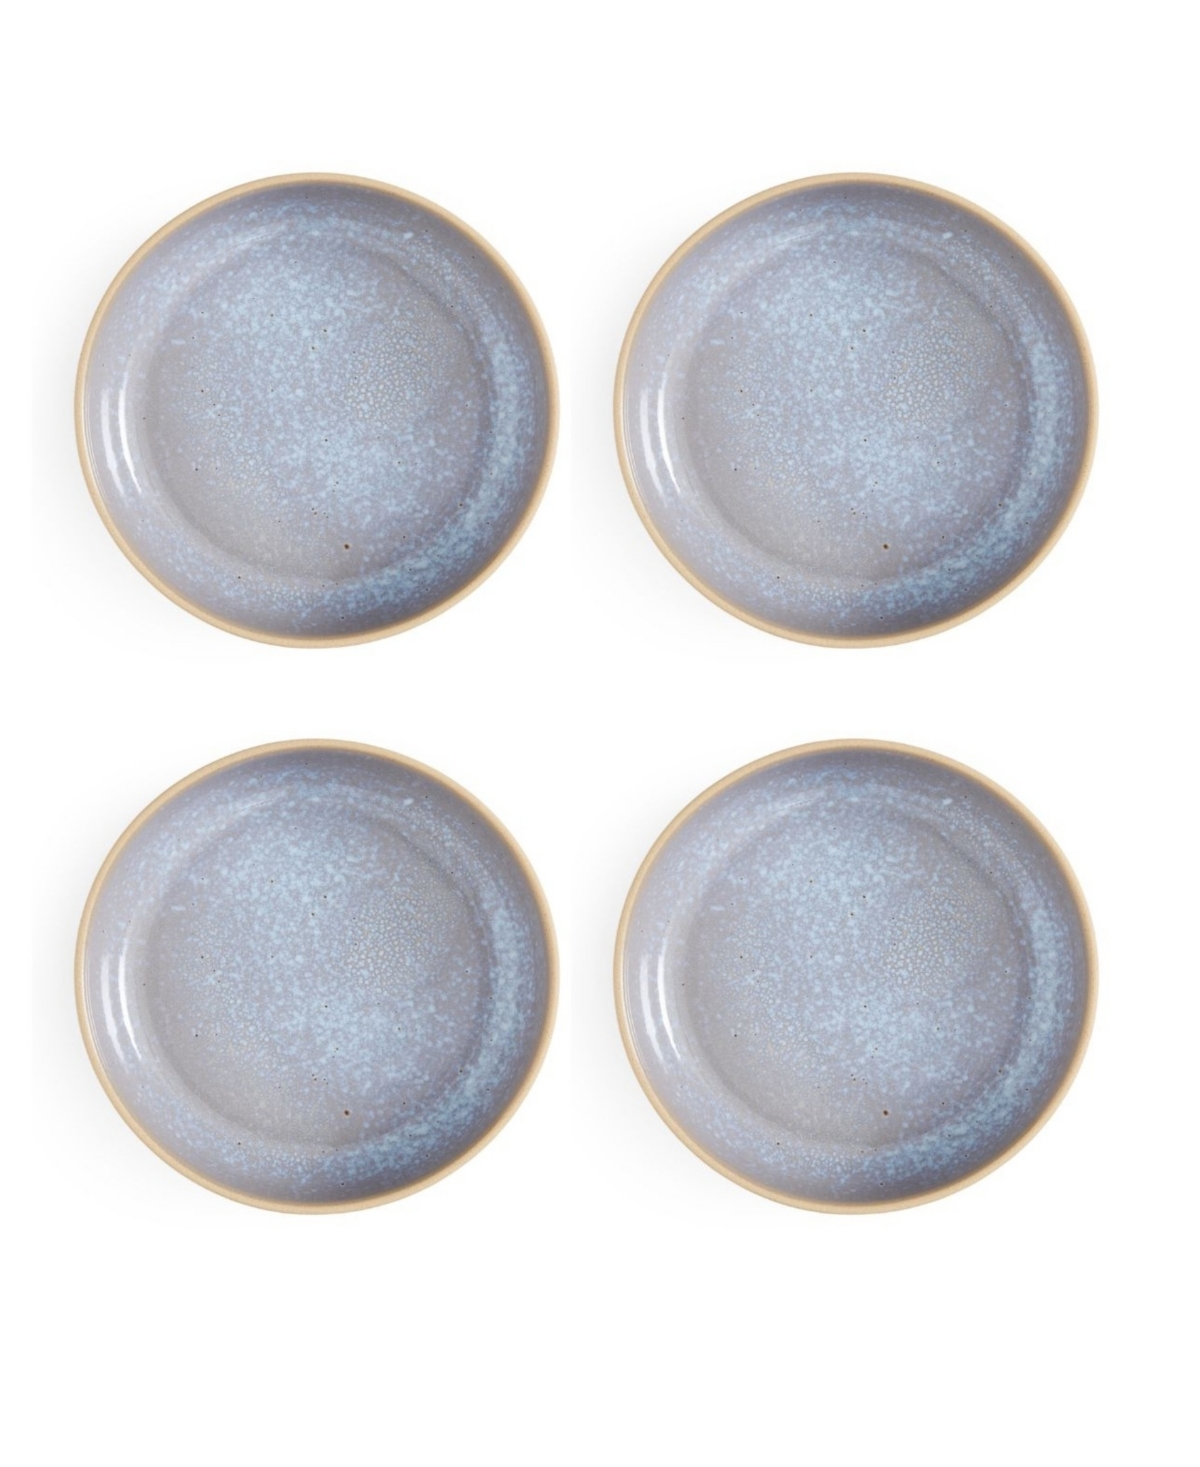 Minerals Low Bowls, Set of 4 - Aquamarine